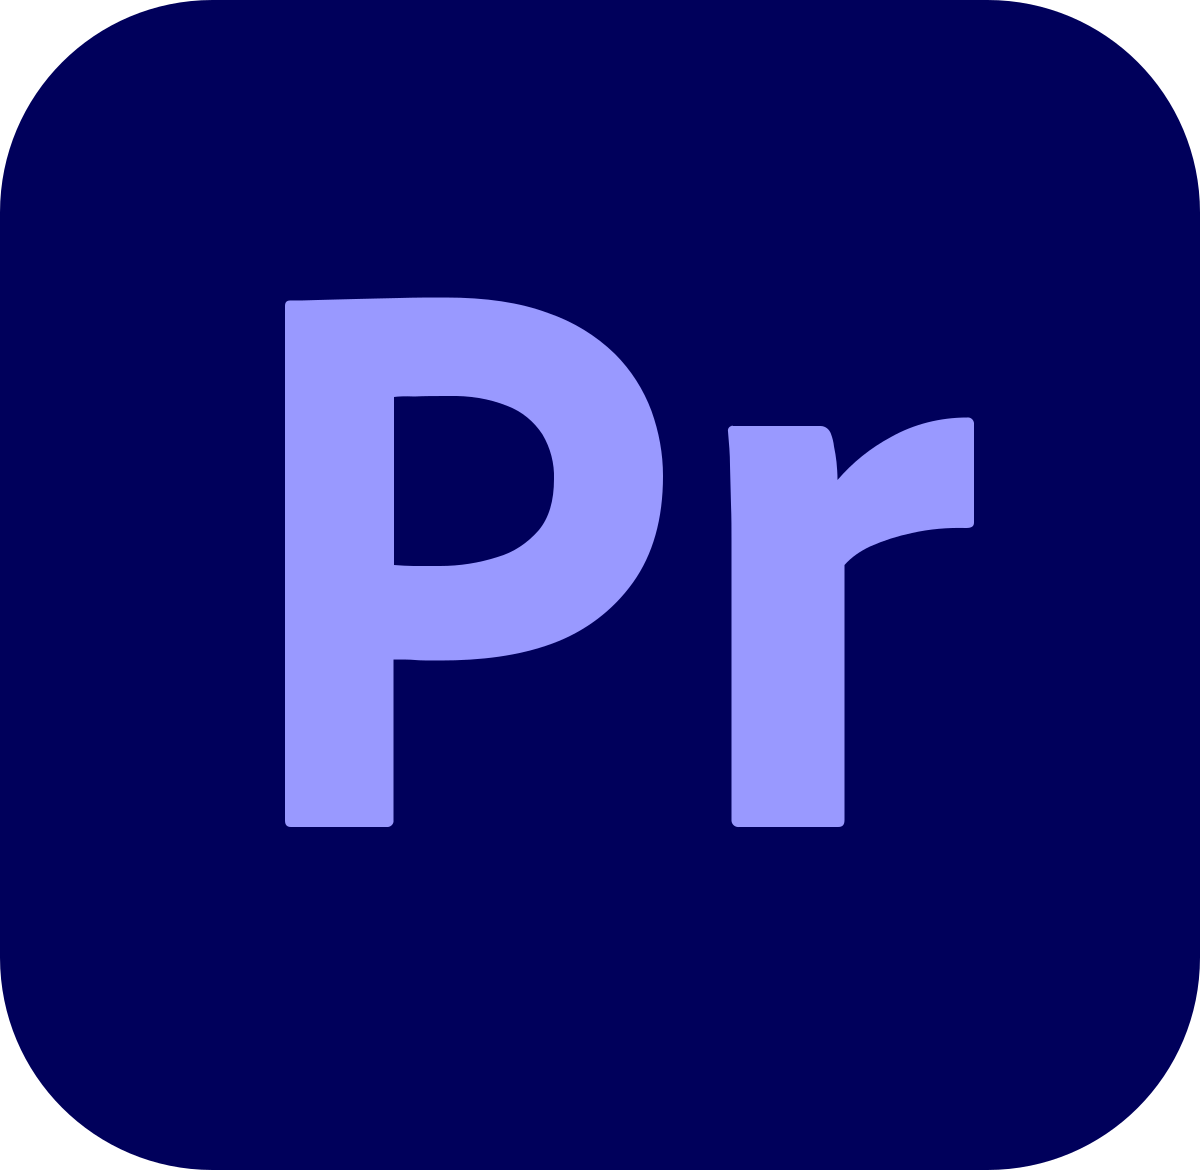 ดาวน์โหลด Adobe Premiere Pro ฟรี เวอร์ชันล่าสุดปี 2023